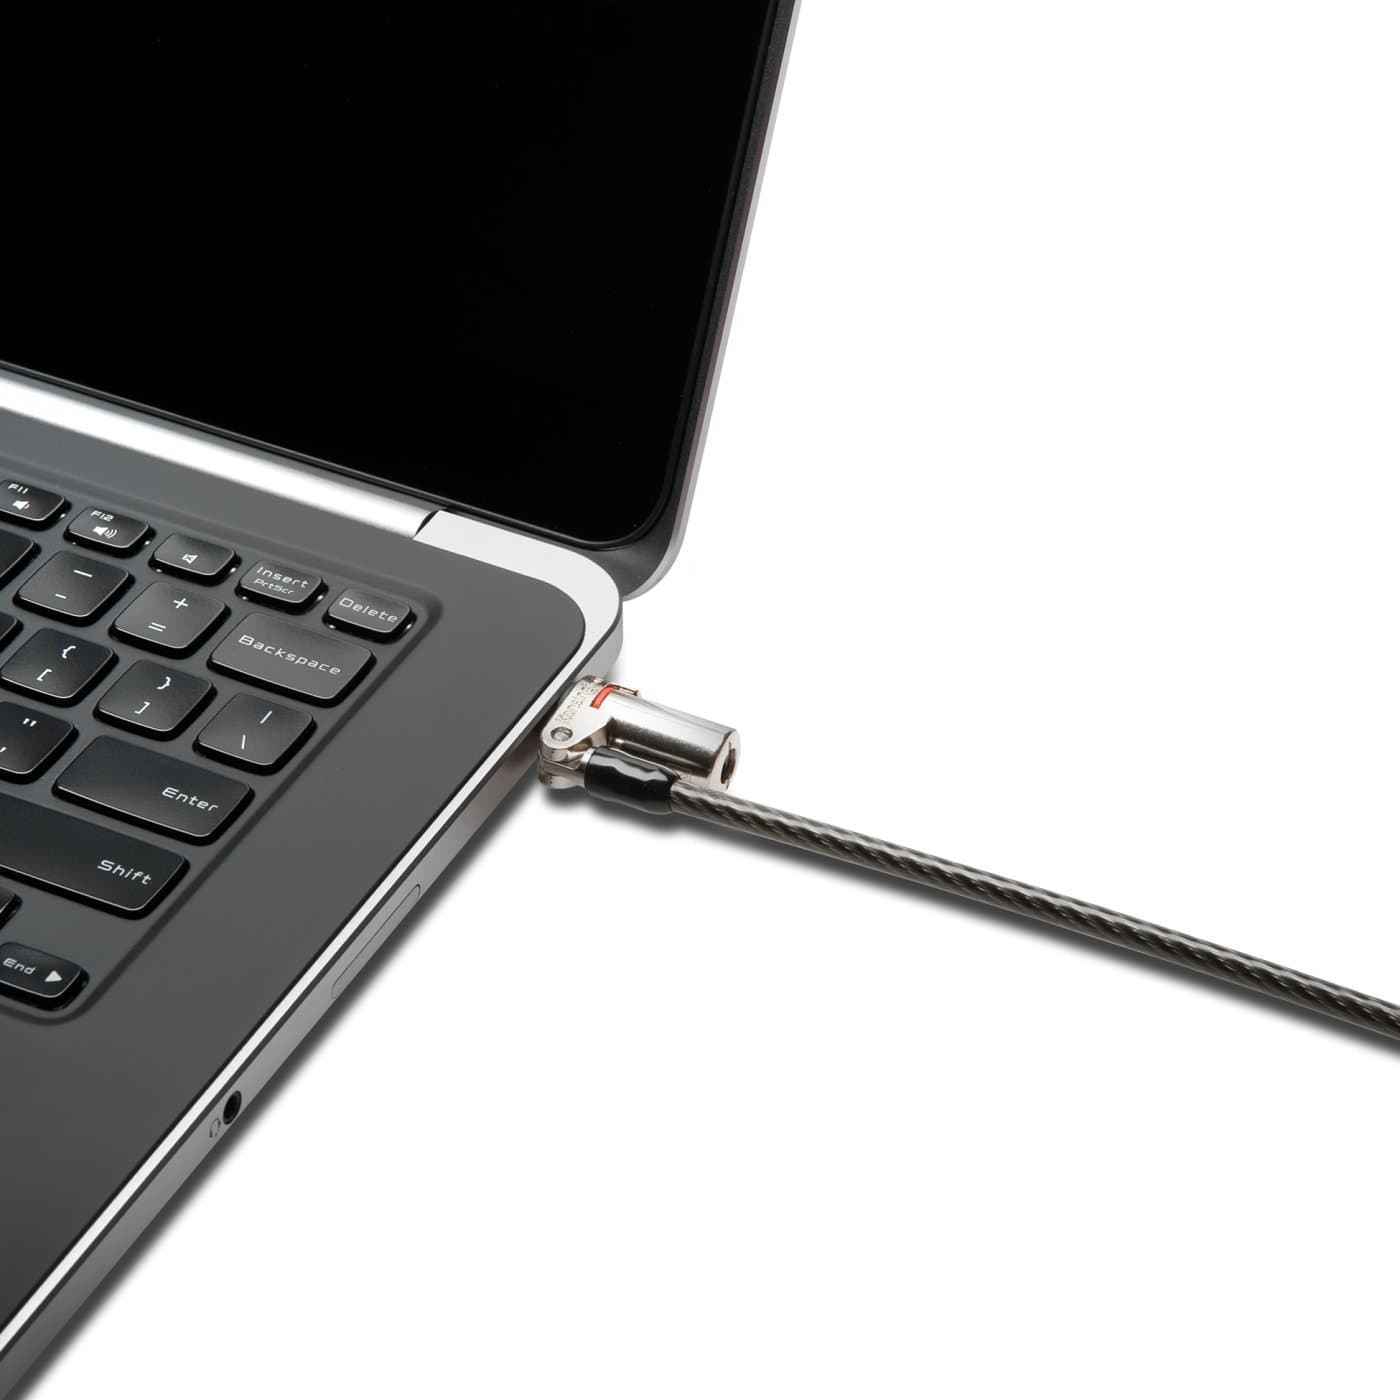 Genuine Kensington MicroSaver Ultrabook Laptop Tablet Security Slot Keyed Lock